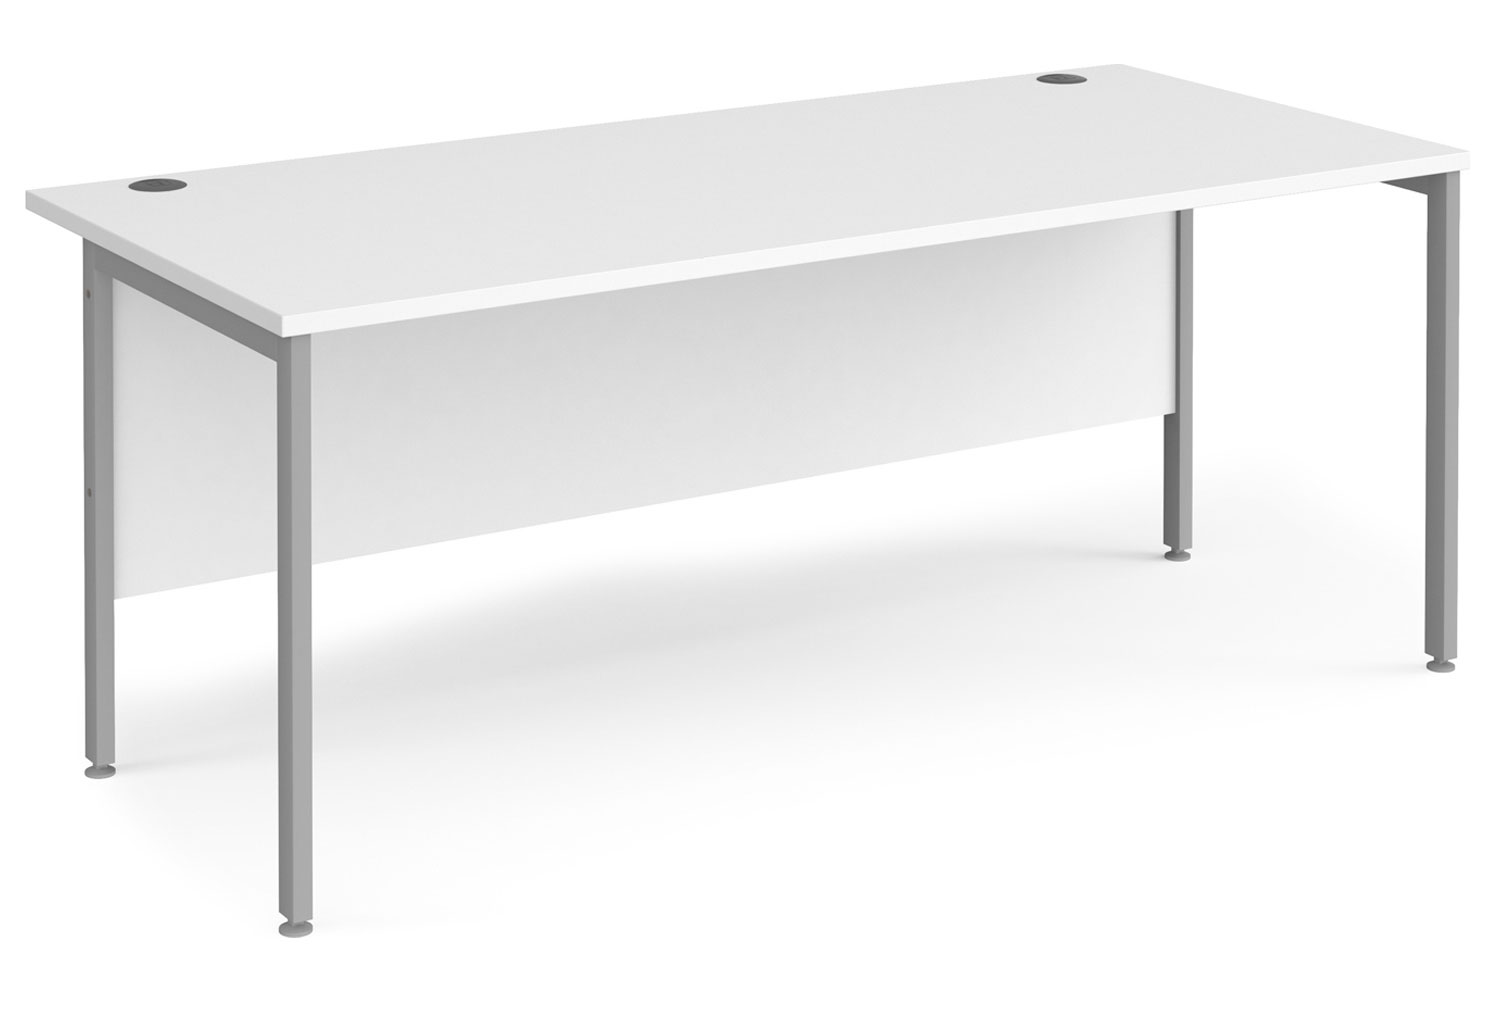 Value Line Deluxe H-Leg Rectangular Office Desk (Silver Legs), 180wx80dx73h (cm), White